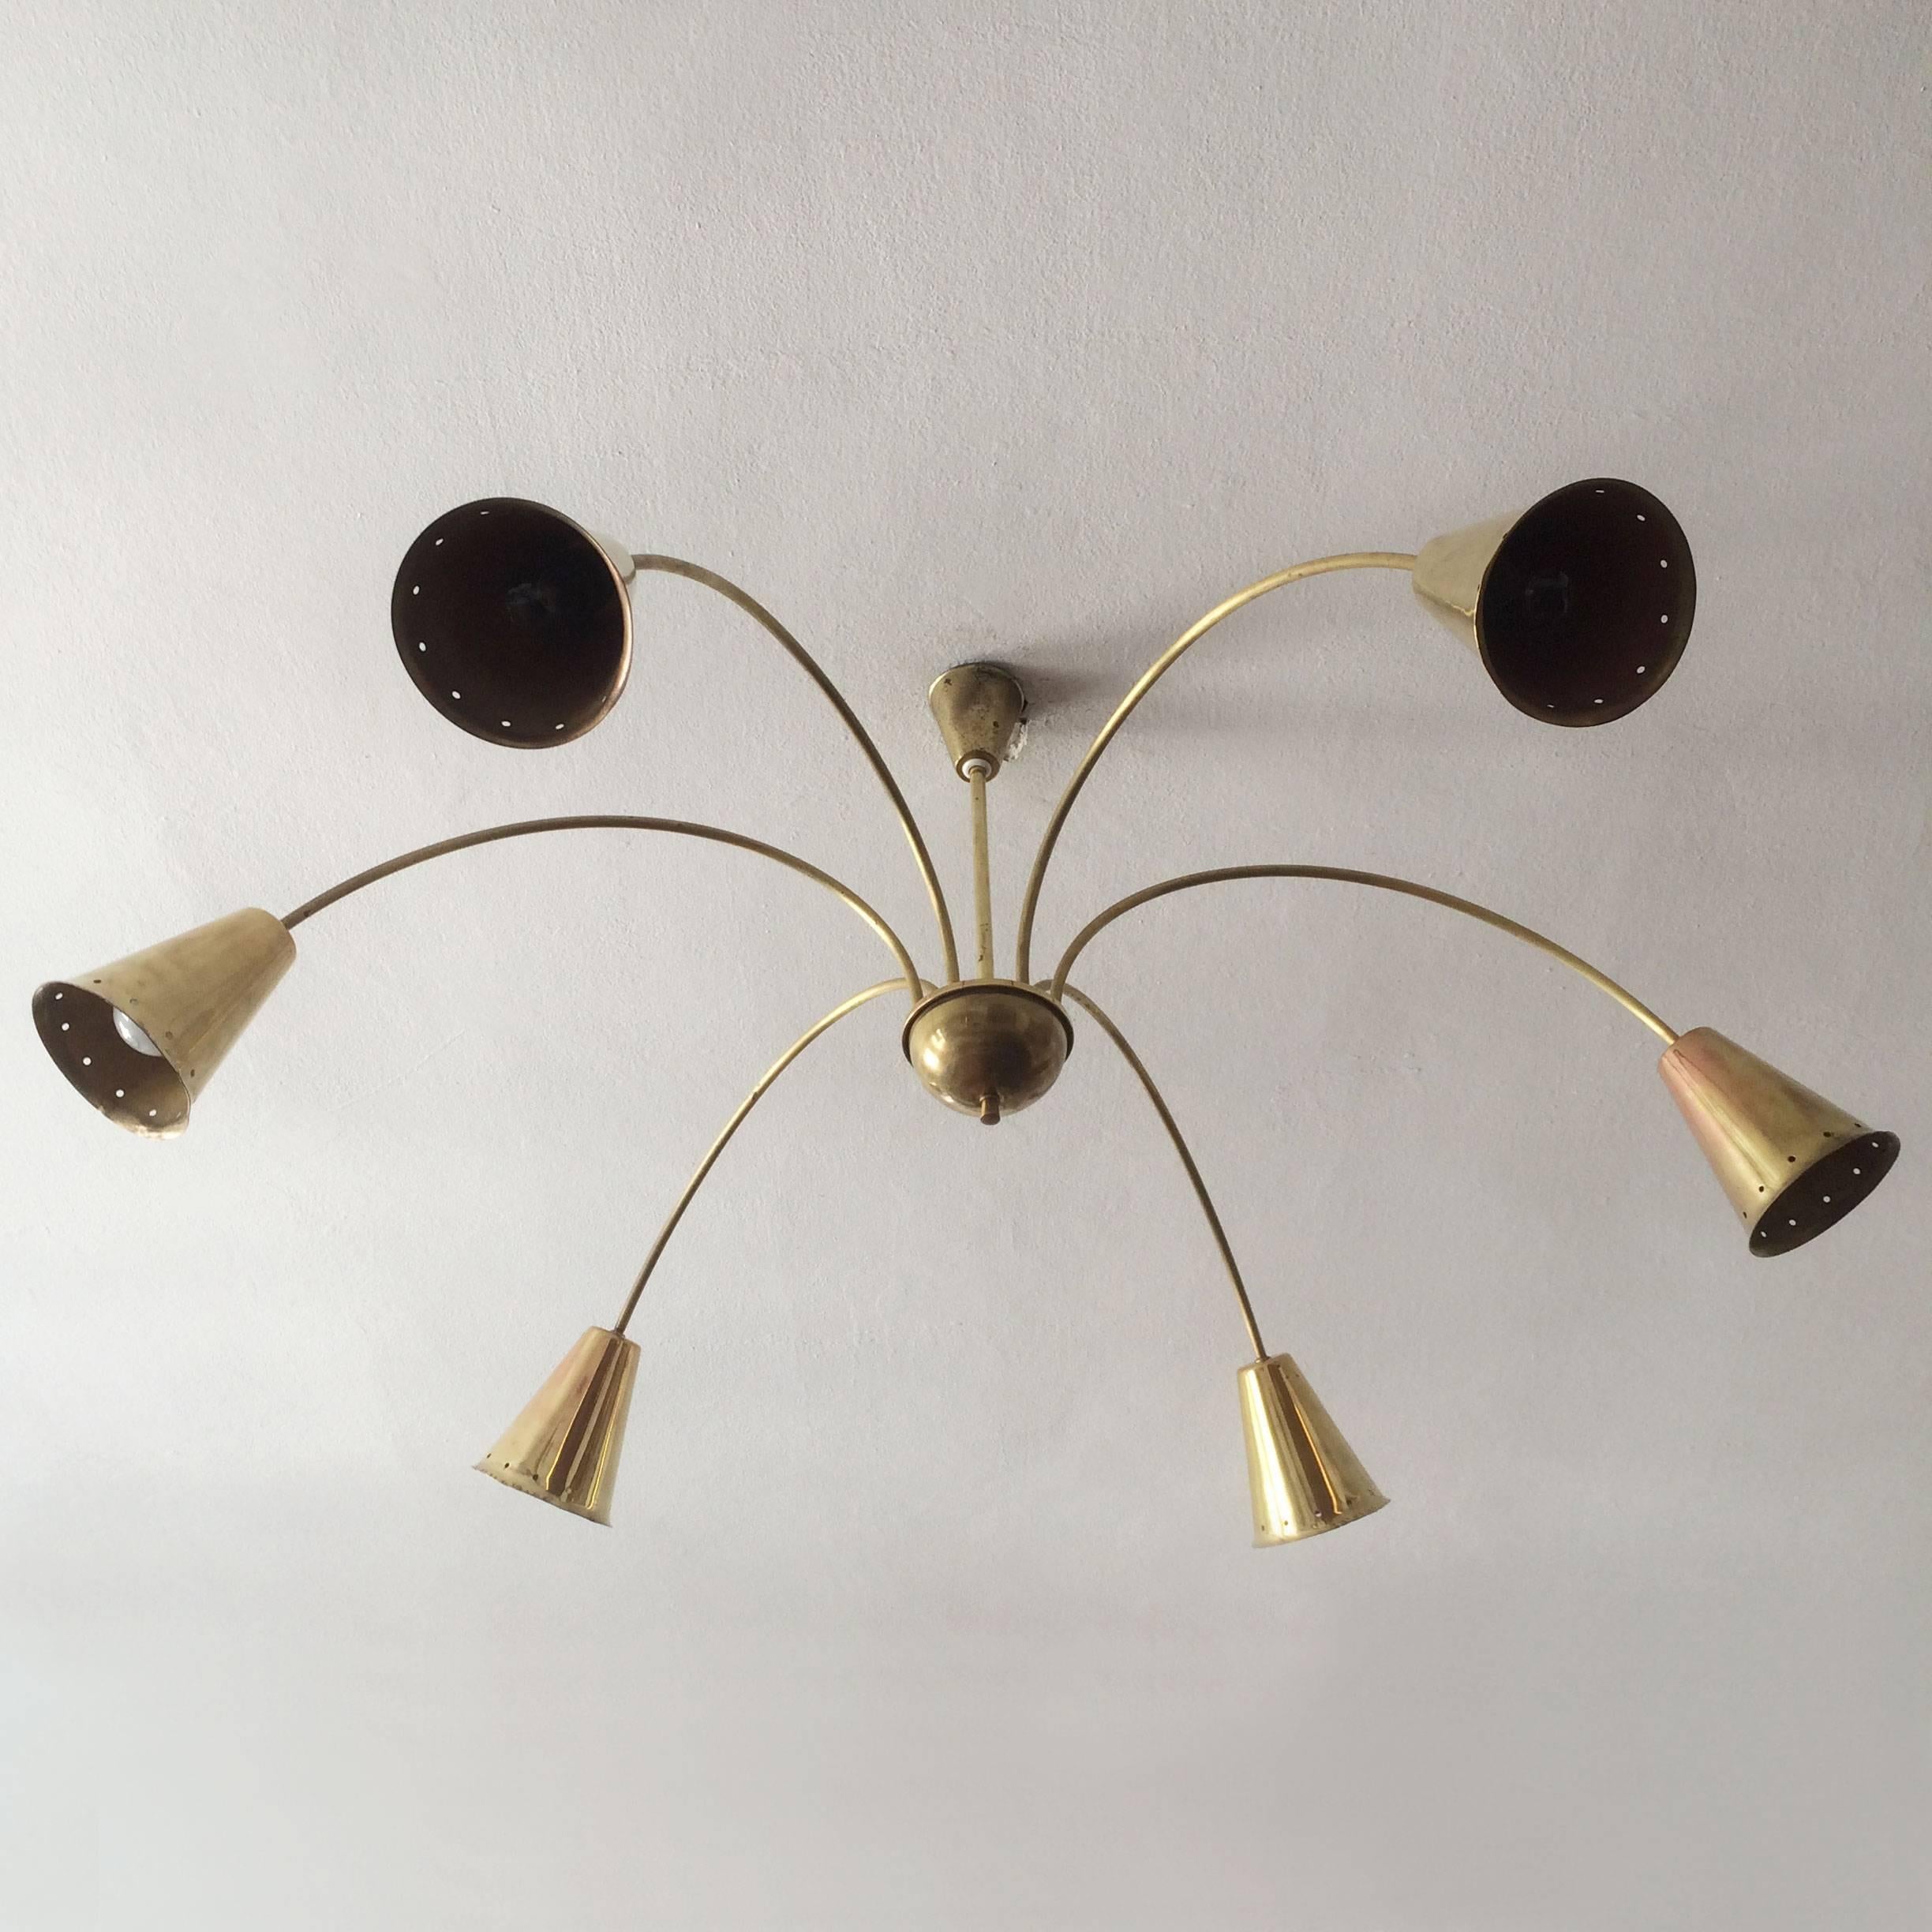 Brass Six-Armed Sputnik Chandelier or Pendant Lamp, 1950s, Germany